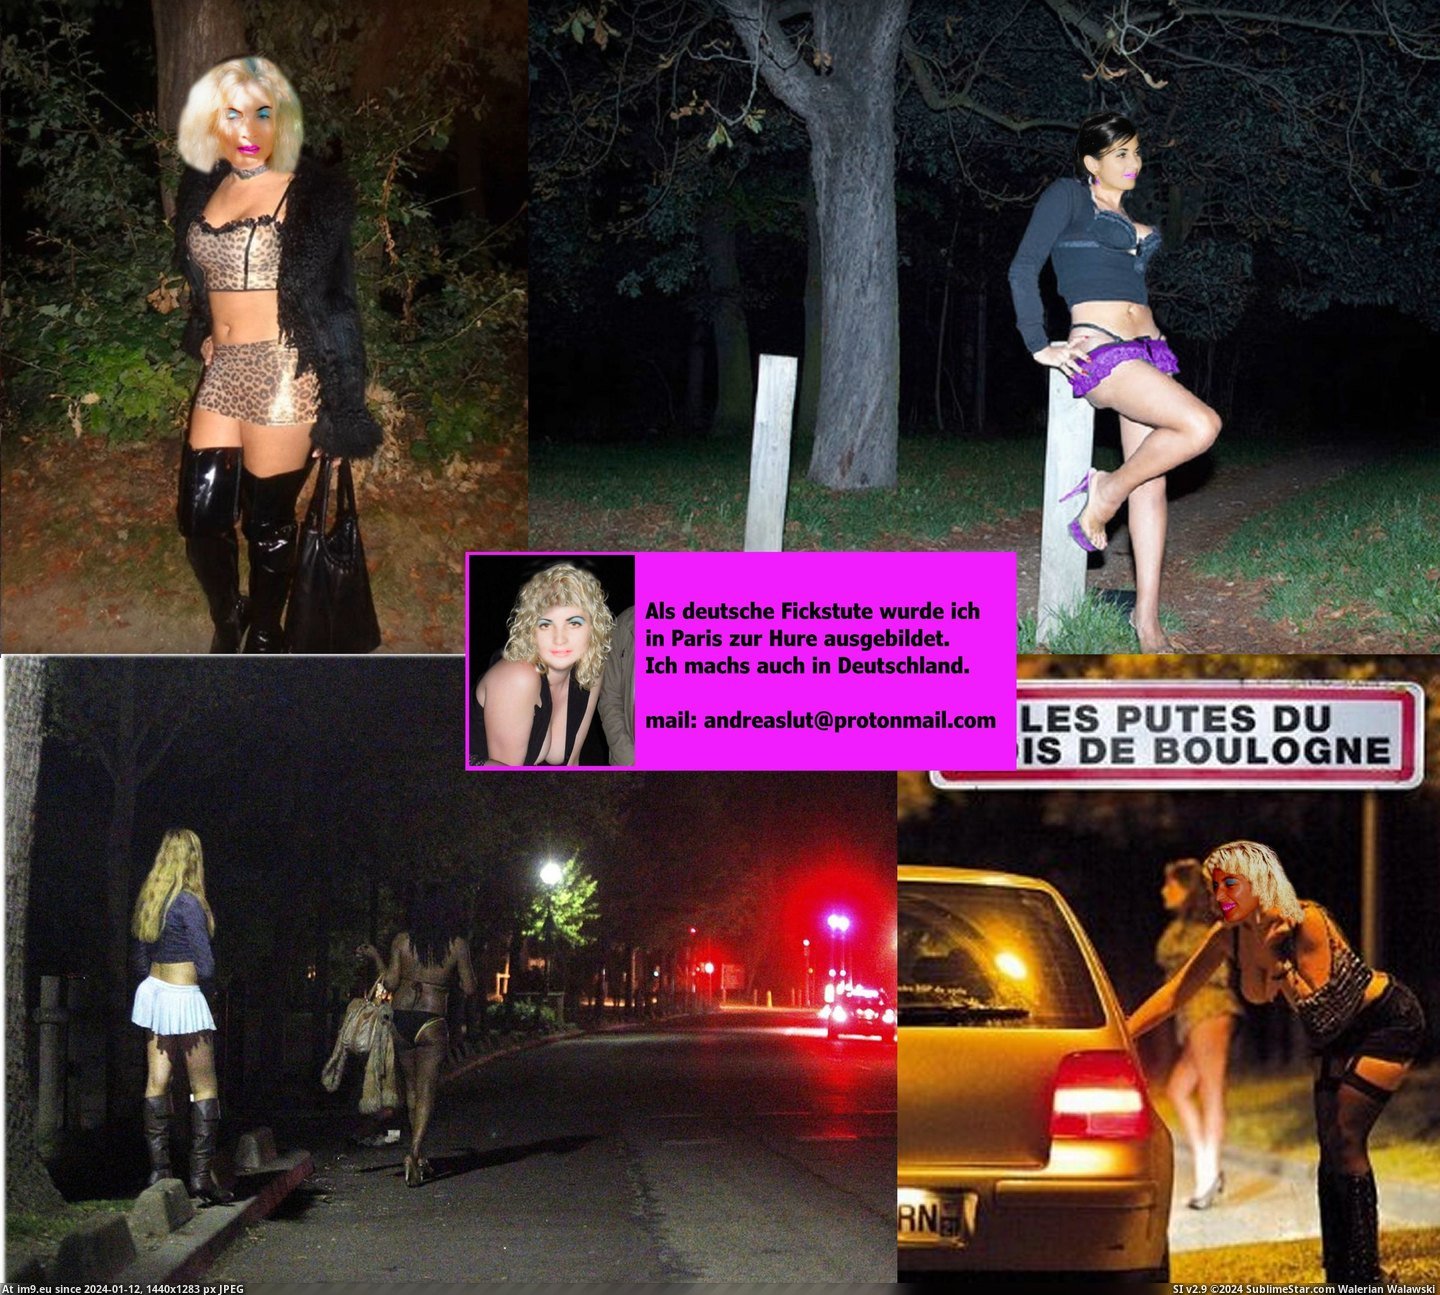 #Slut #Whore #Fotze #Prostituee #Webwhore #Nutte #Pute #Andrea #Strich #Hure #Putain Andrea Bois de Boulogne putes.2jpg Pic. (Obraz z album Instant Upload))